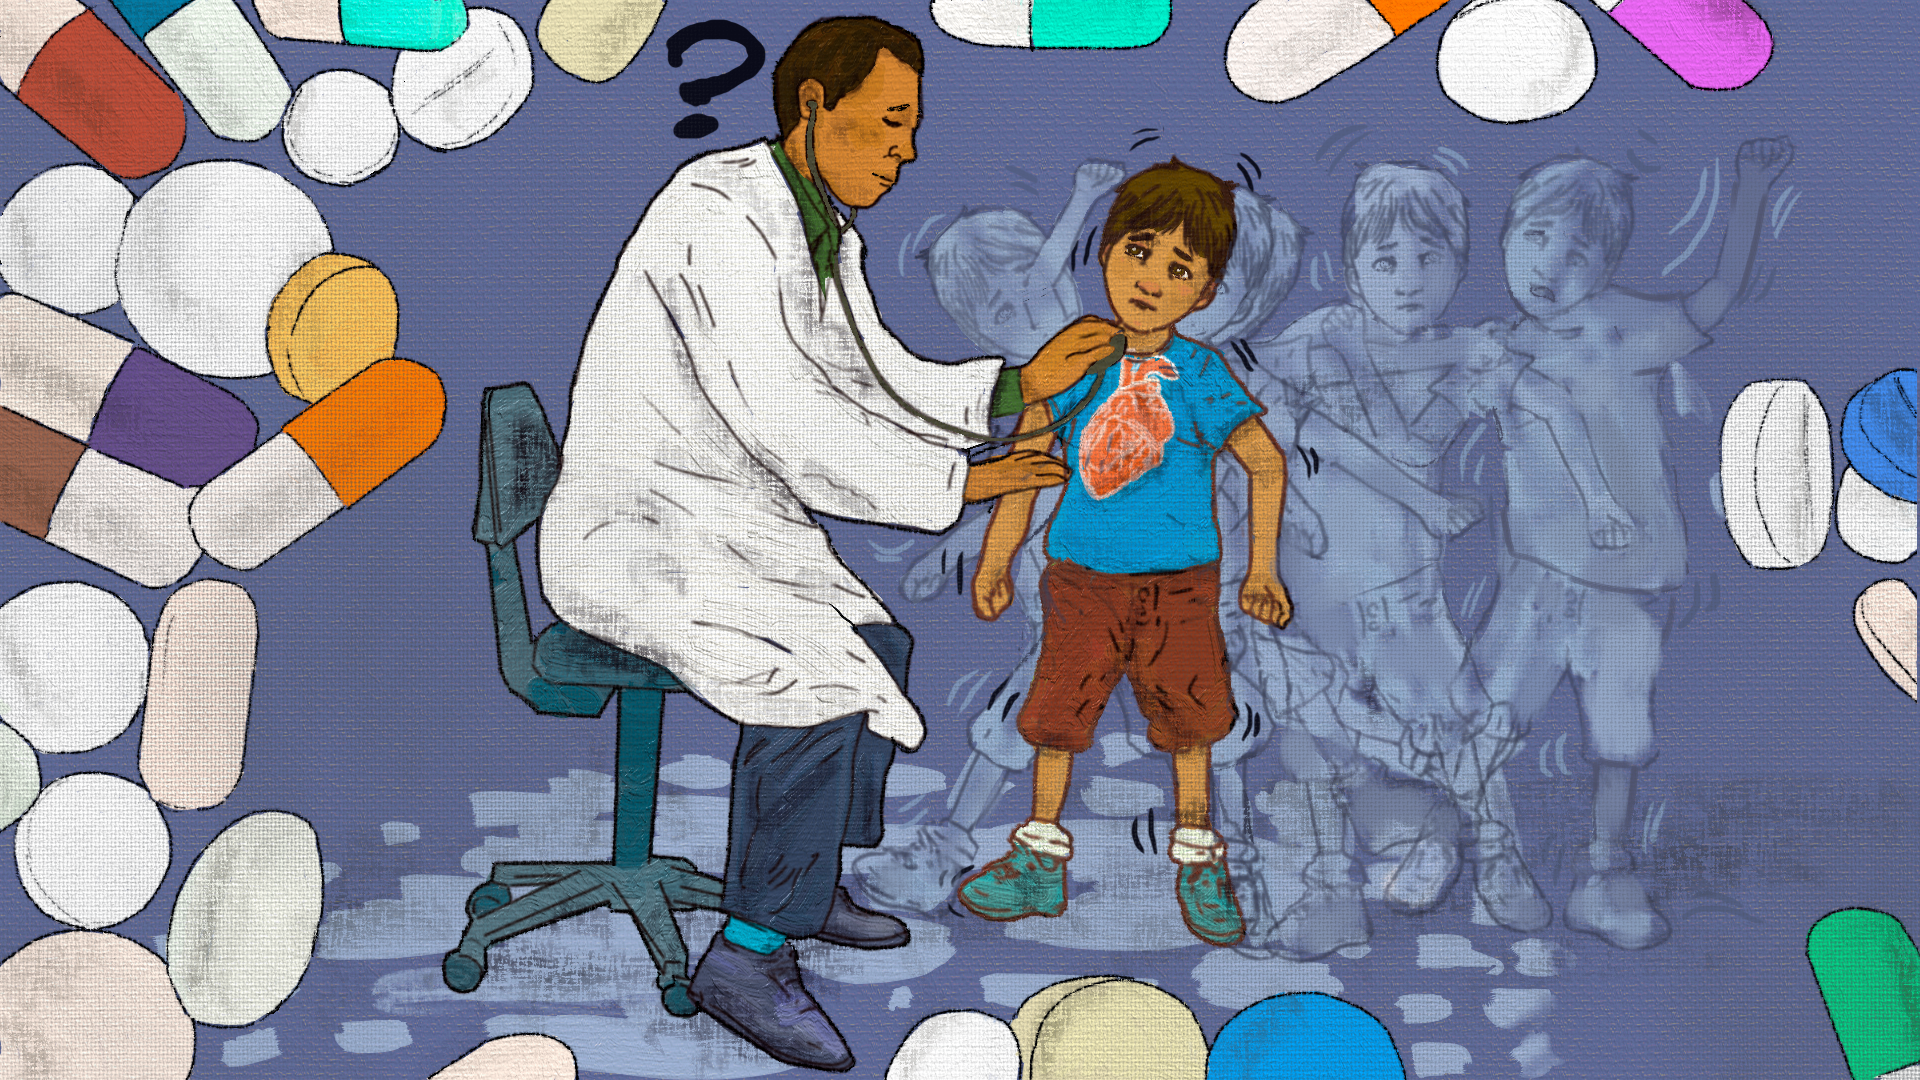 Médico Pediatra evaluando a un niño - Ilustración: Robert Dugarte